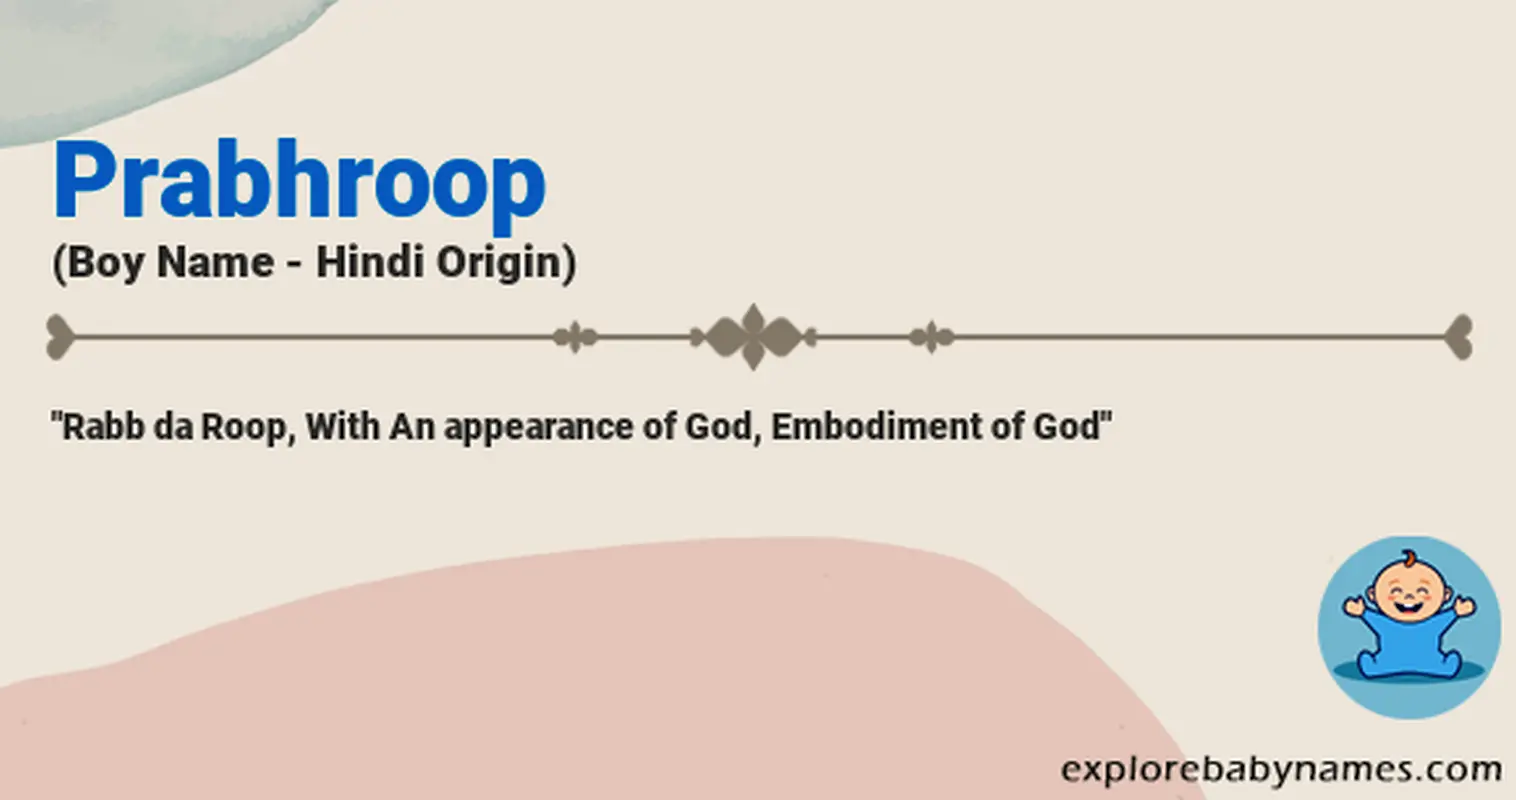 Meaning of Prabhroop